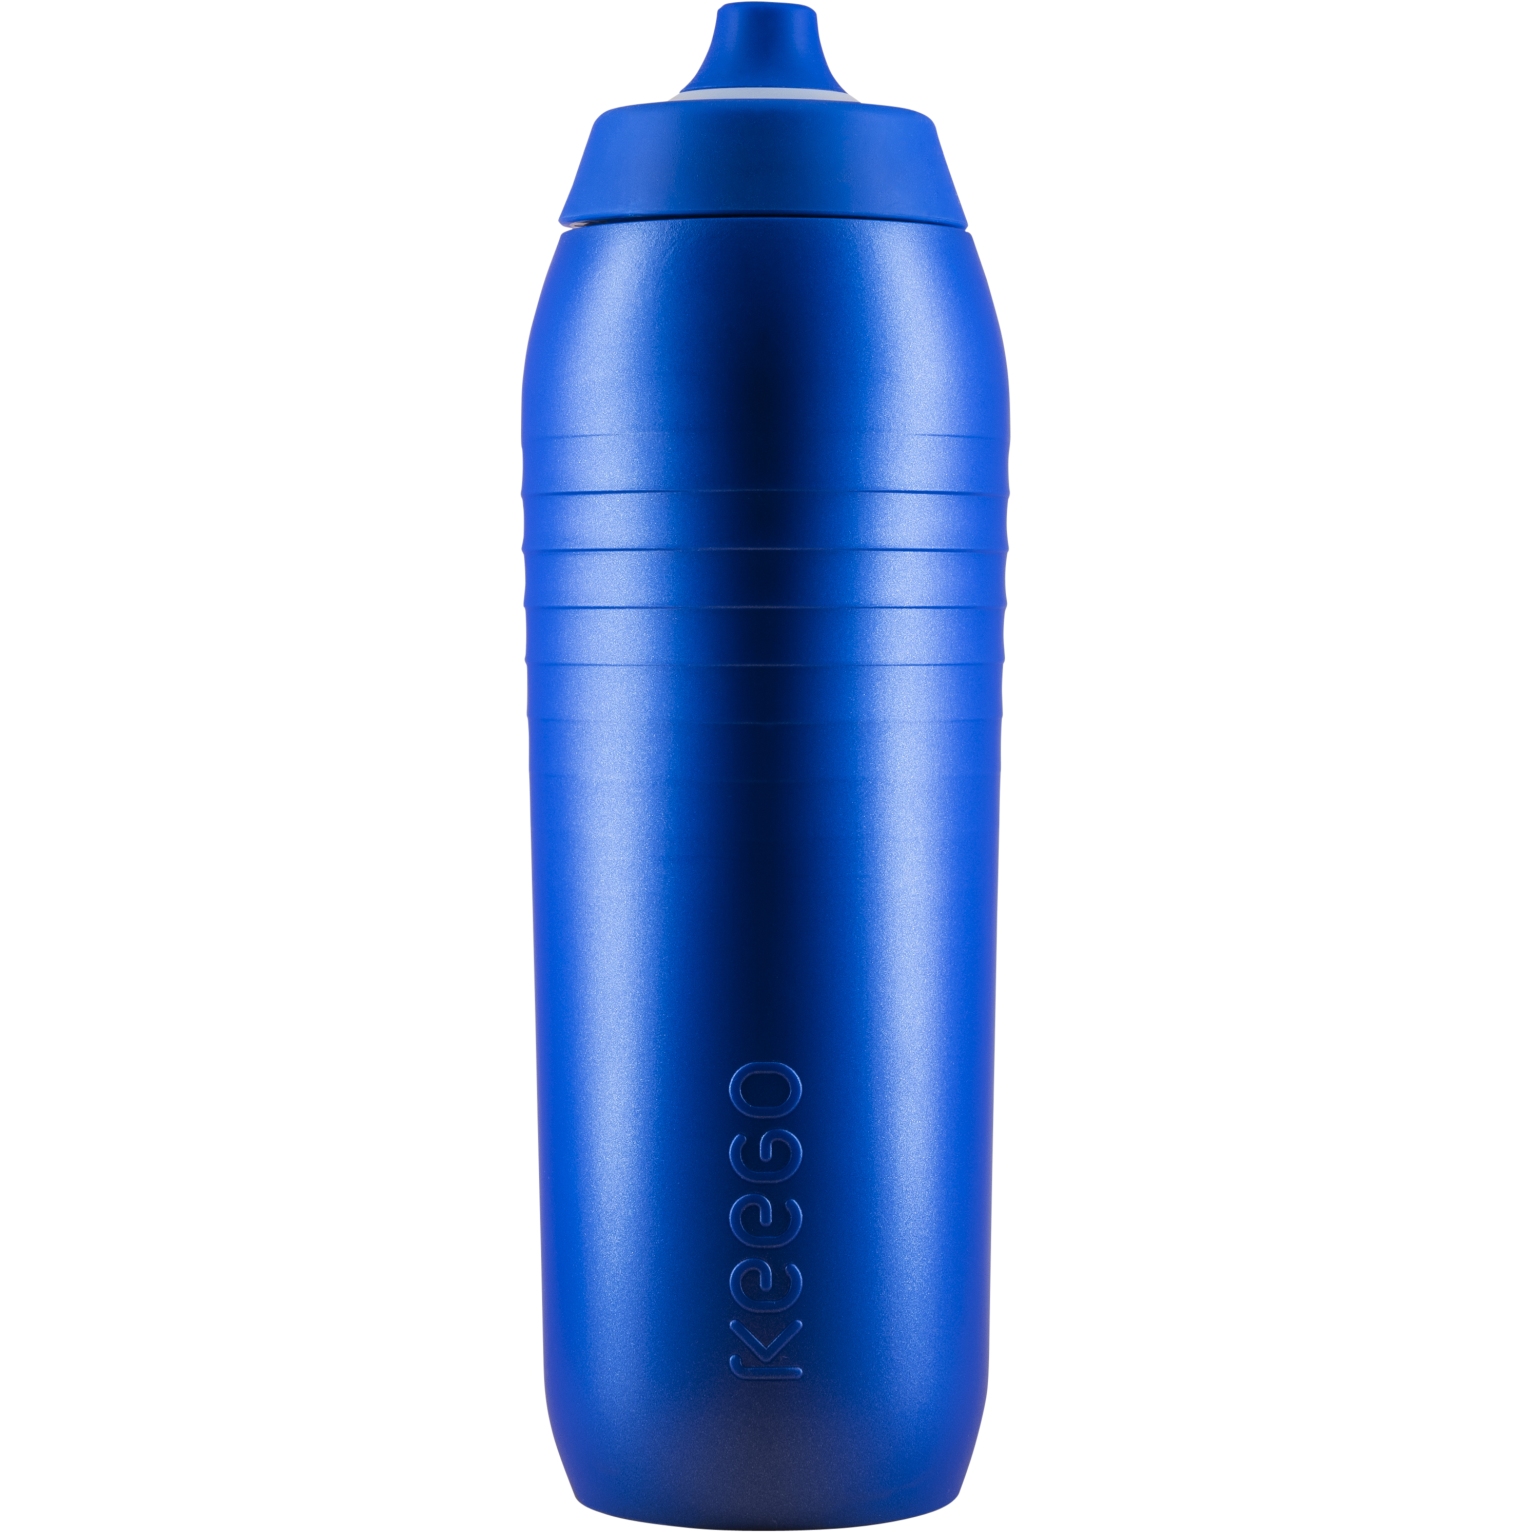 Produktbild von KEEGO Sport Trinkflasche - 750ml - Electric Blue